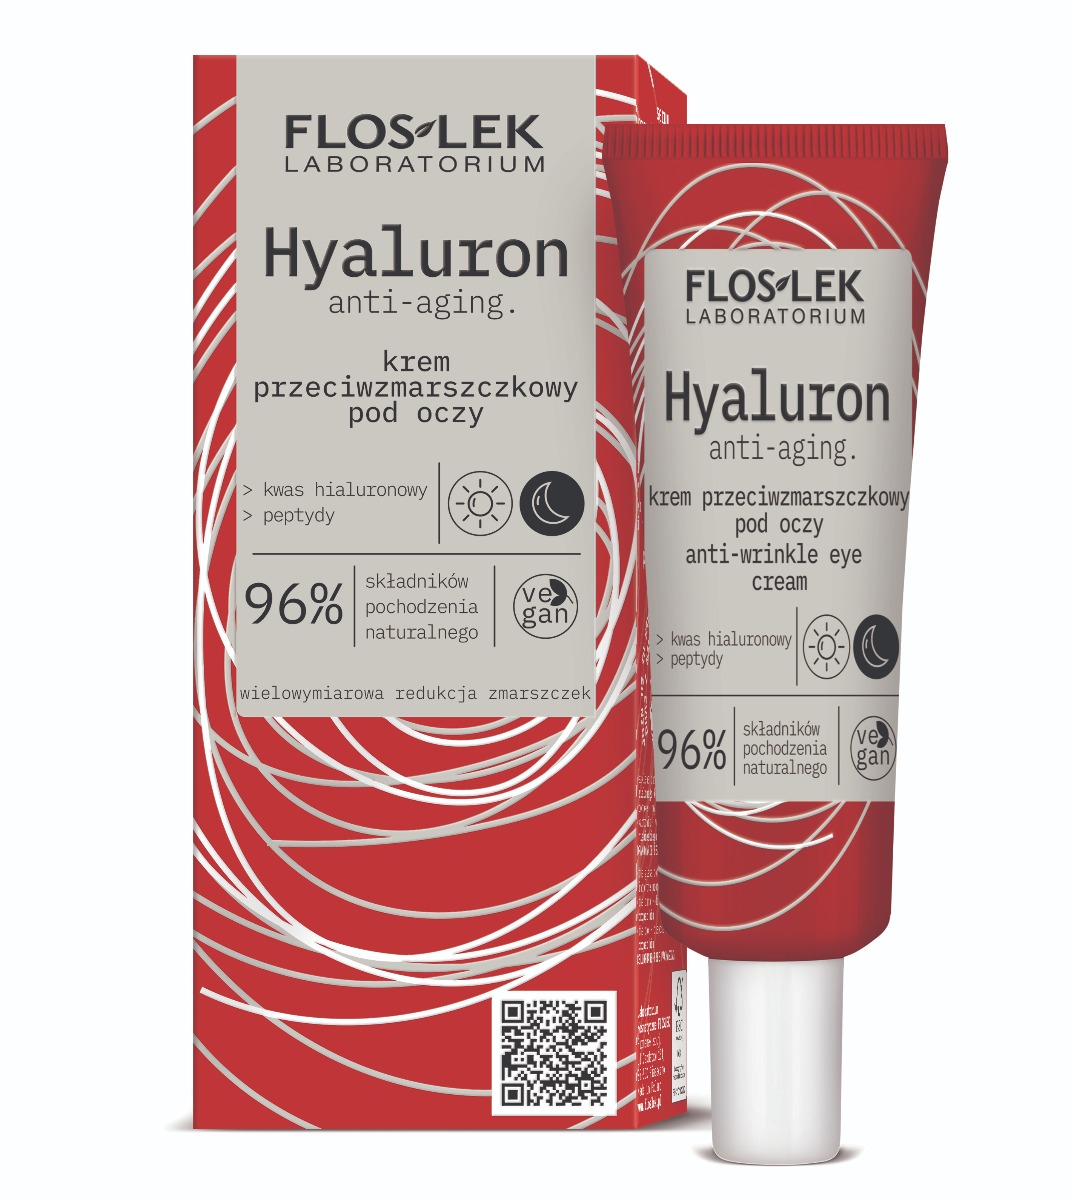 Flos-Lek Floslek Hyaluron Krem przeciwzmarszczkowy pod oczy 30ml